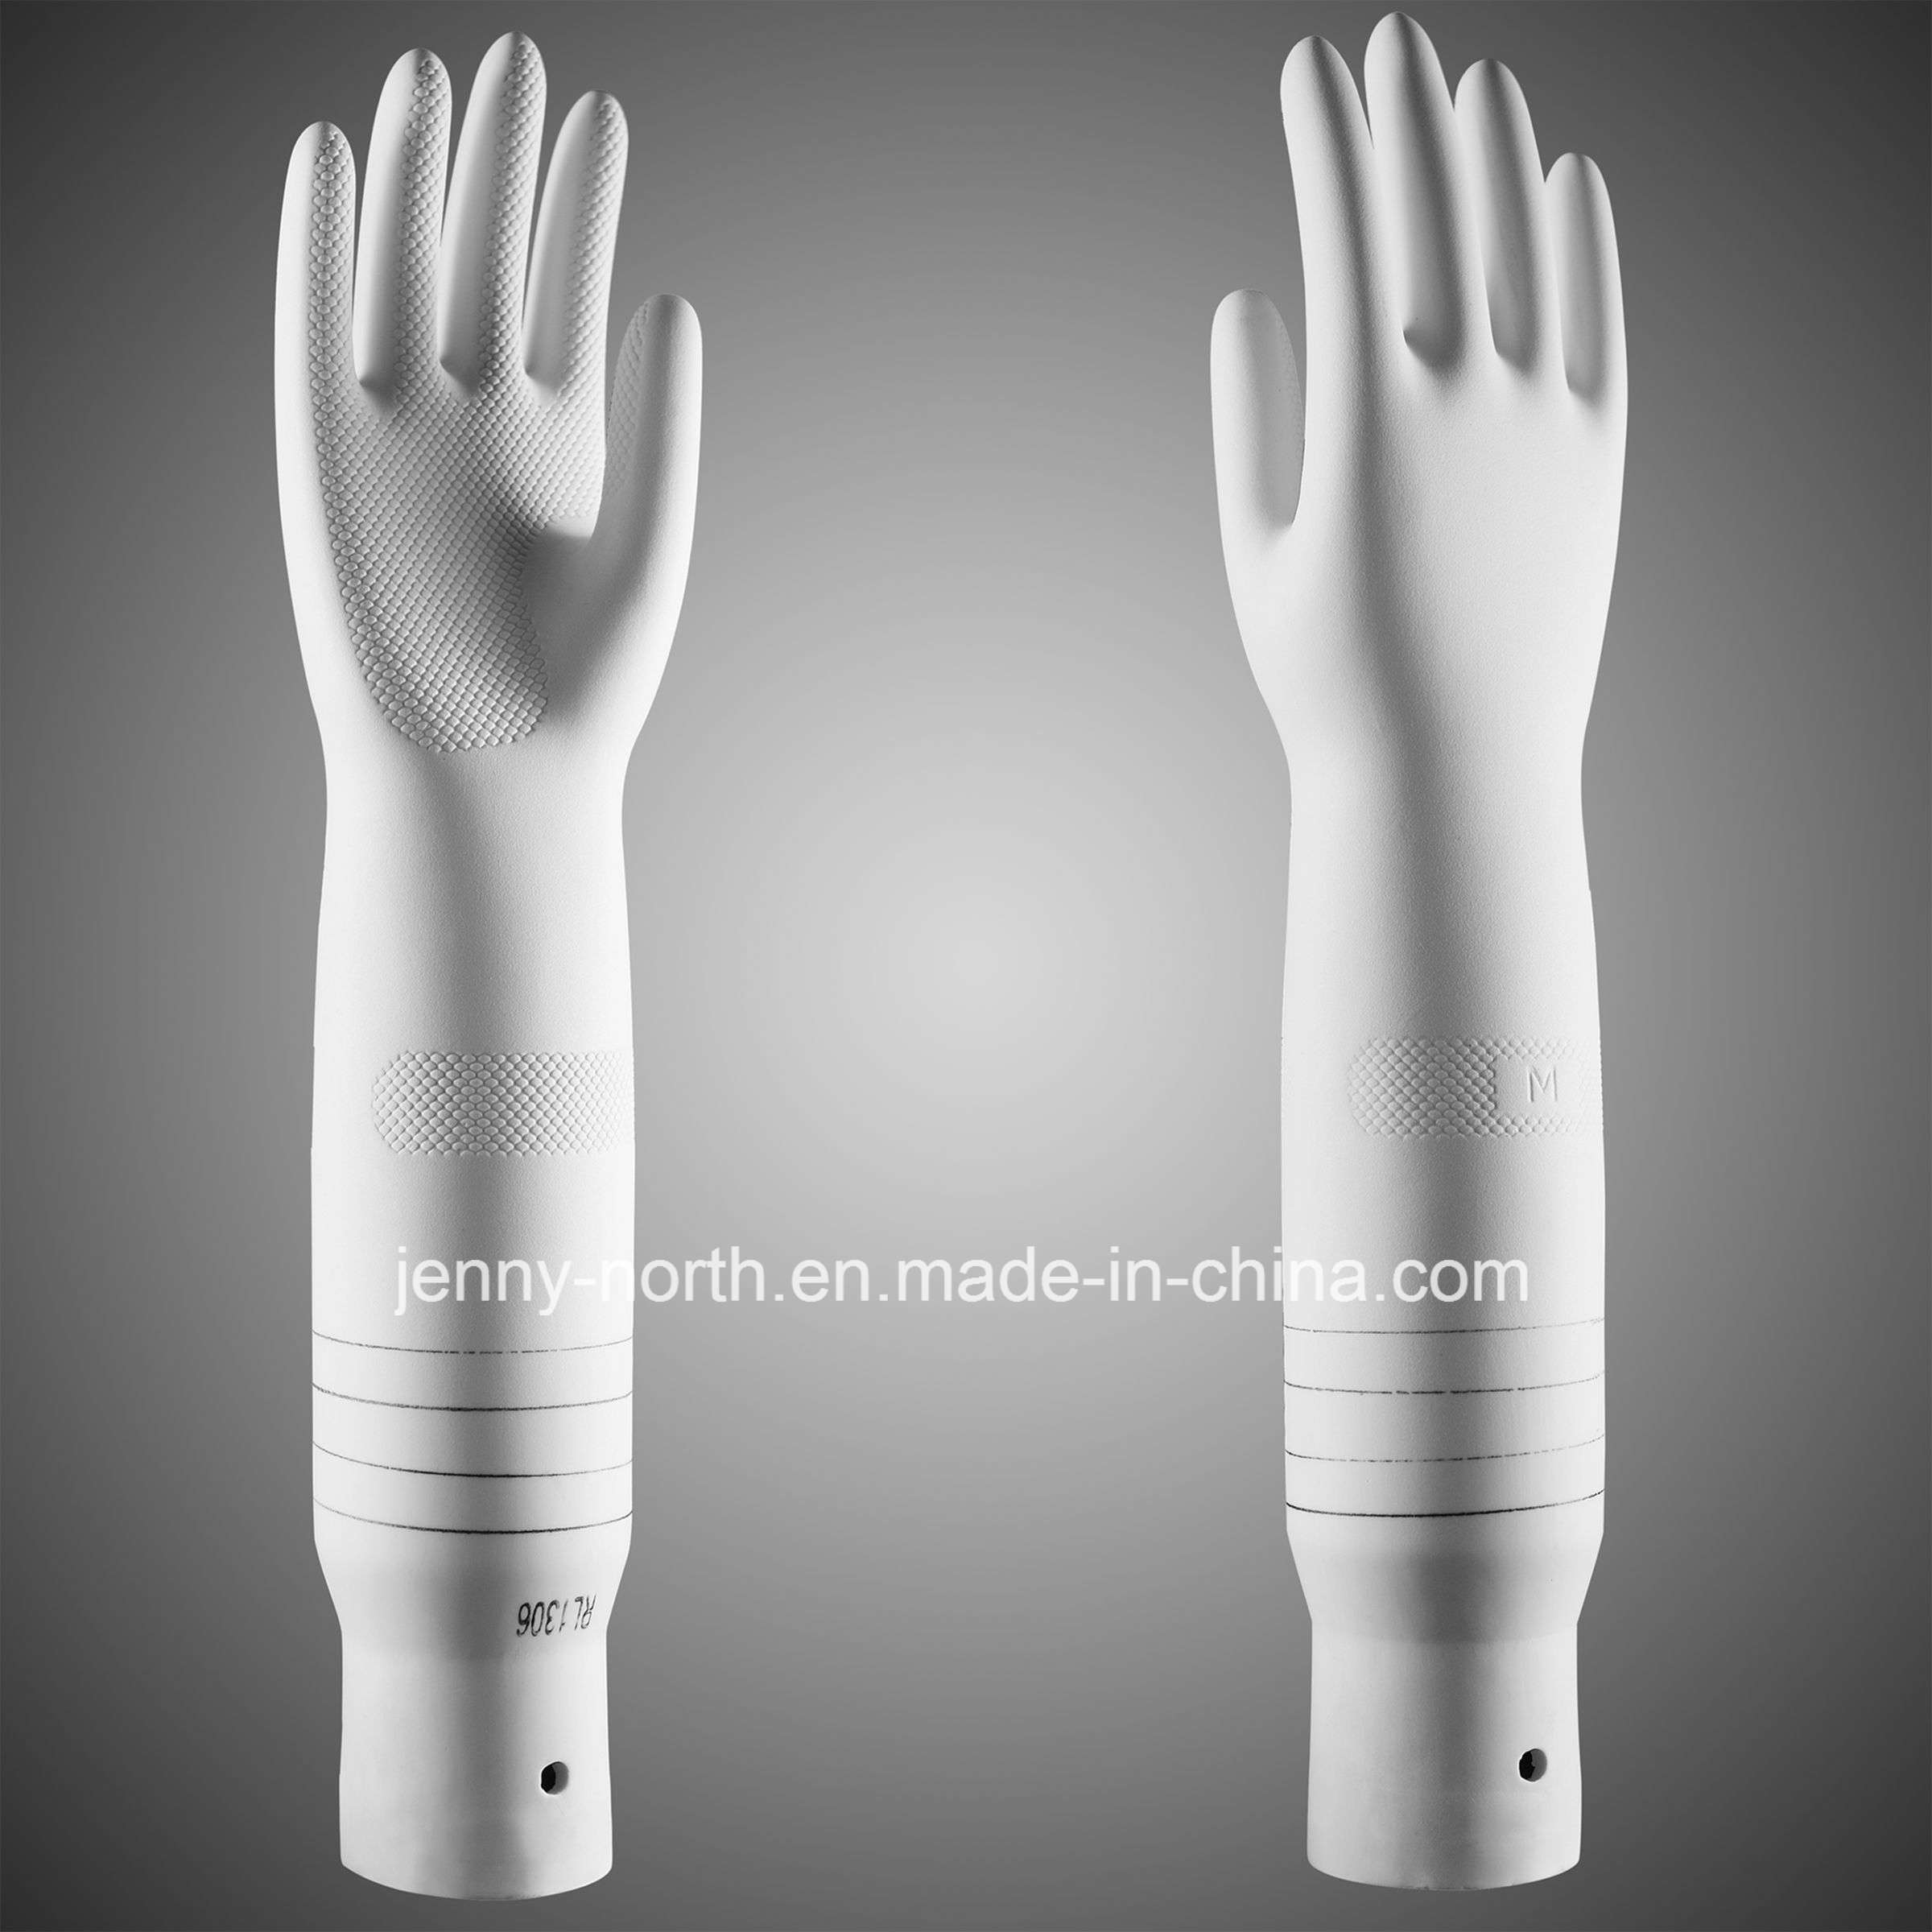 Ripple Porcelain Mold for Household Gloves